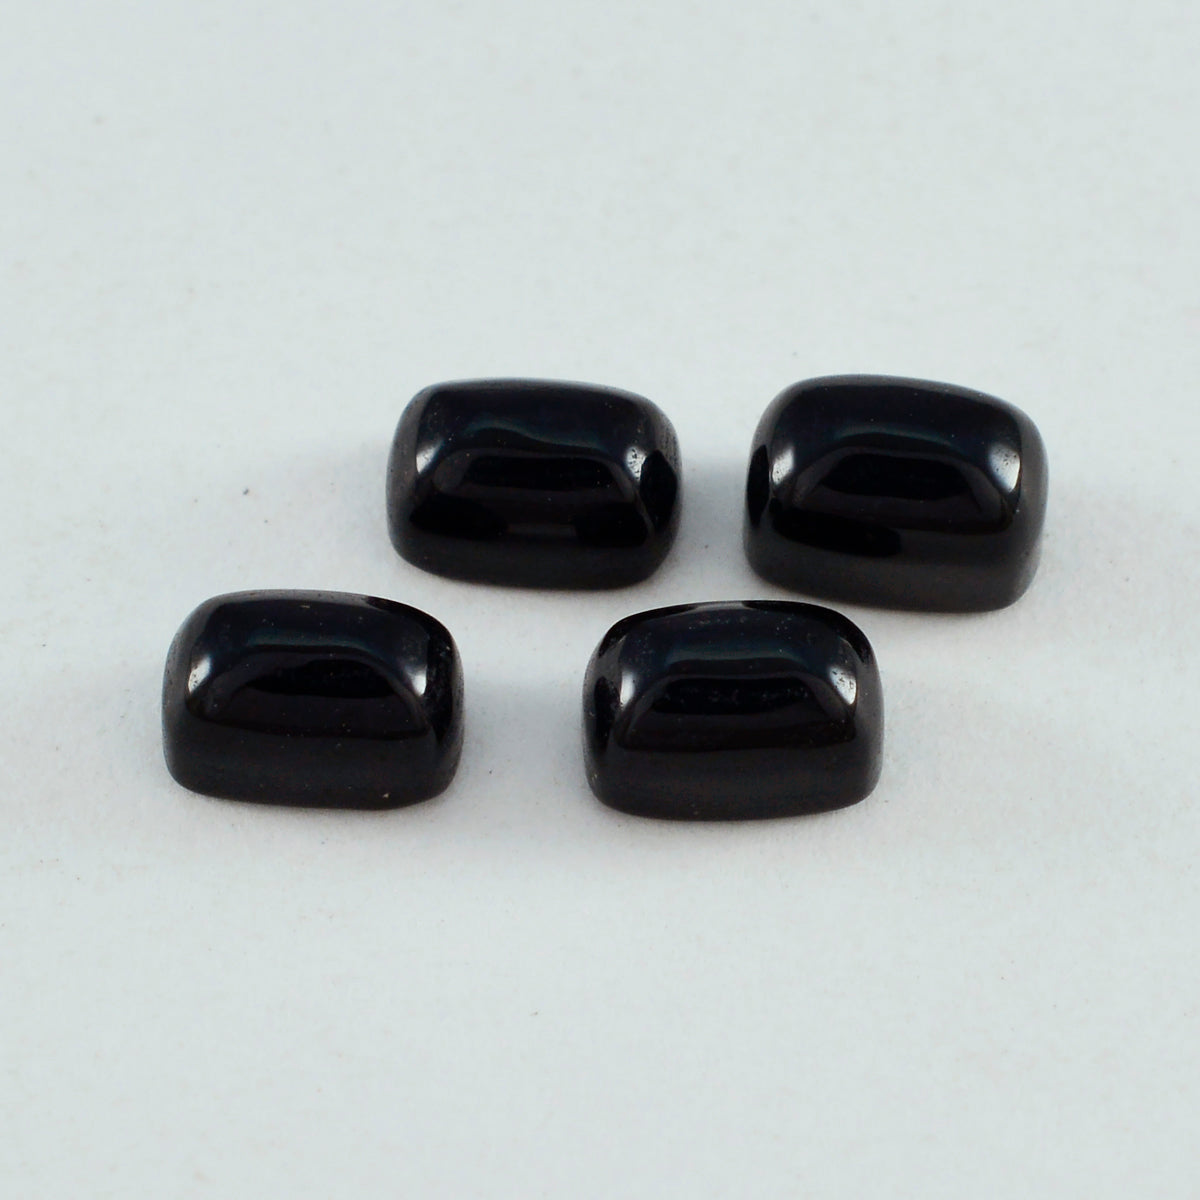 riyogems 1 шт. черный оникс кабошон 6x8 мм восьмиугольной формы красивые качественные свободные драгоценные камни